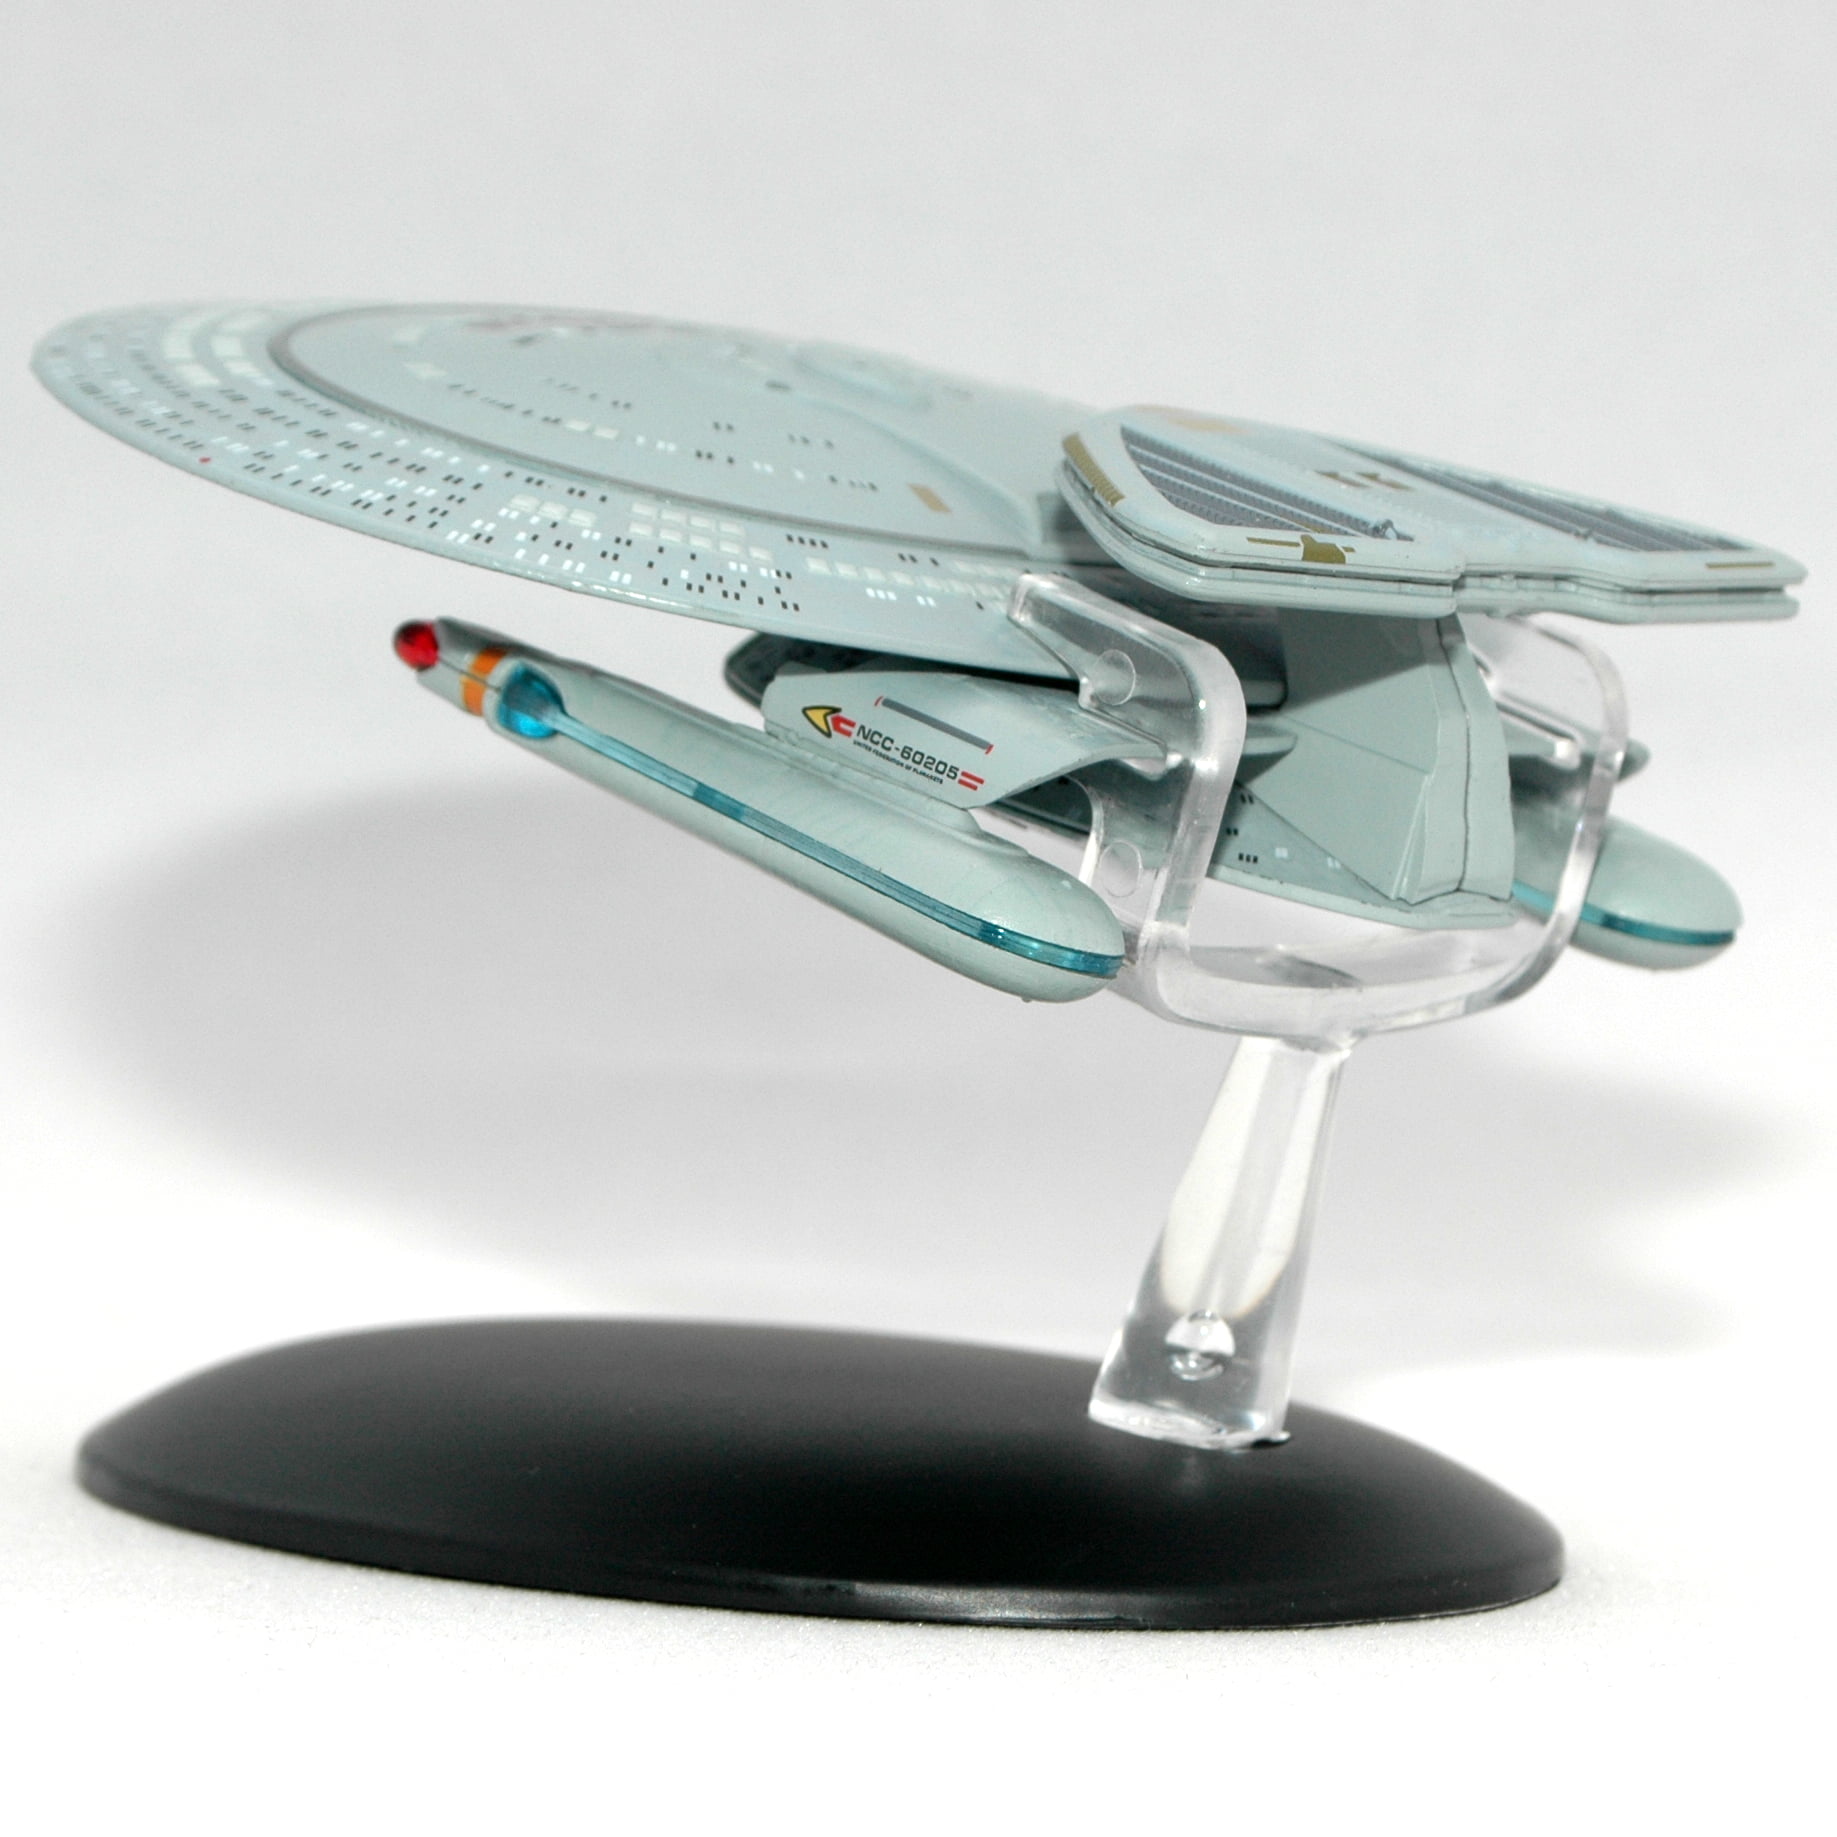 U.S.S Honshu Nebula Class Star Trek Metall Modell Diecast Eaglemoss #26 deutsch 